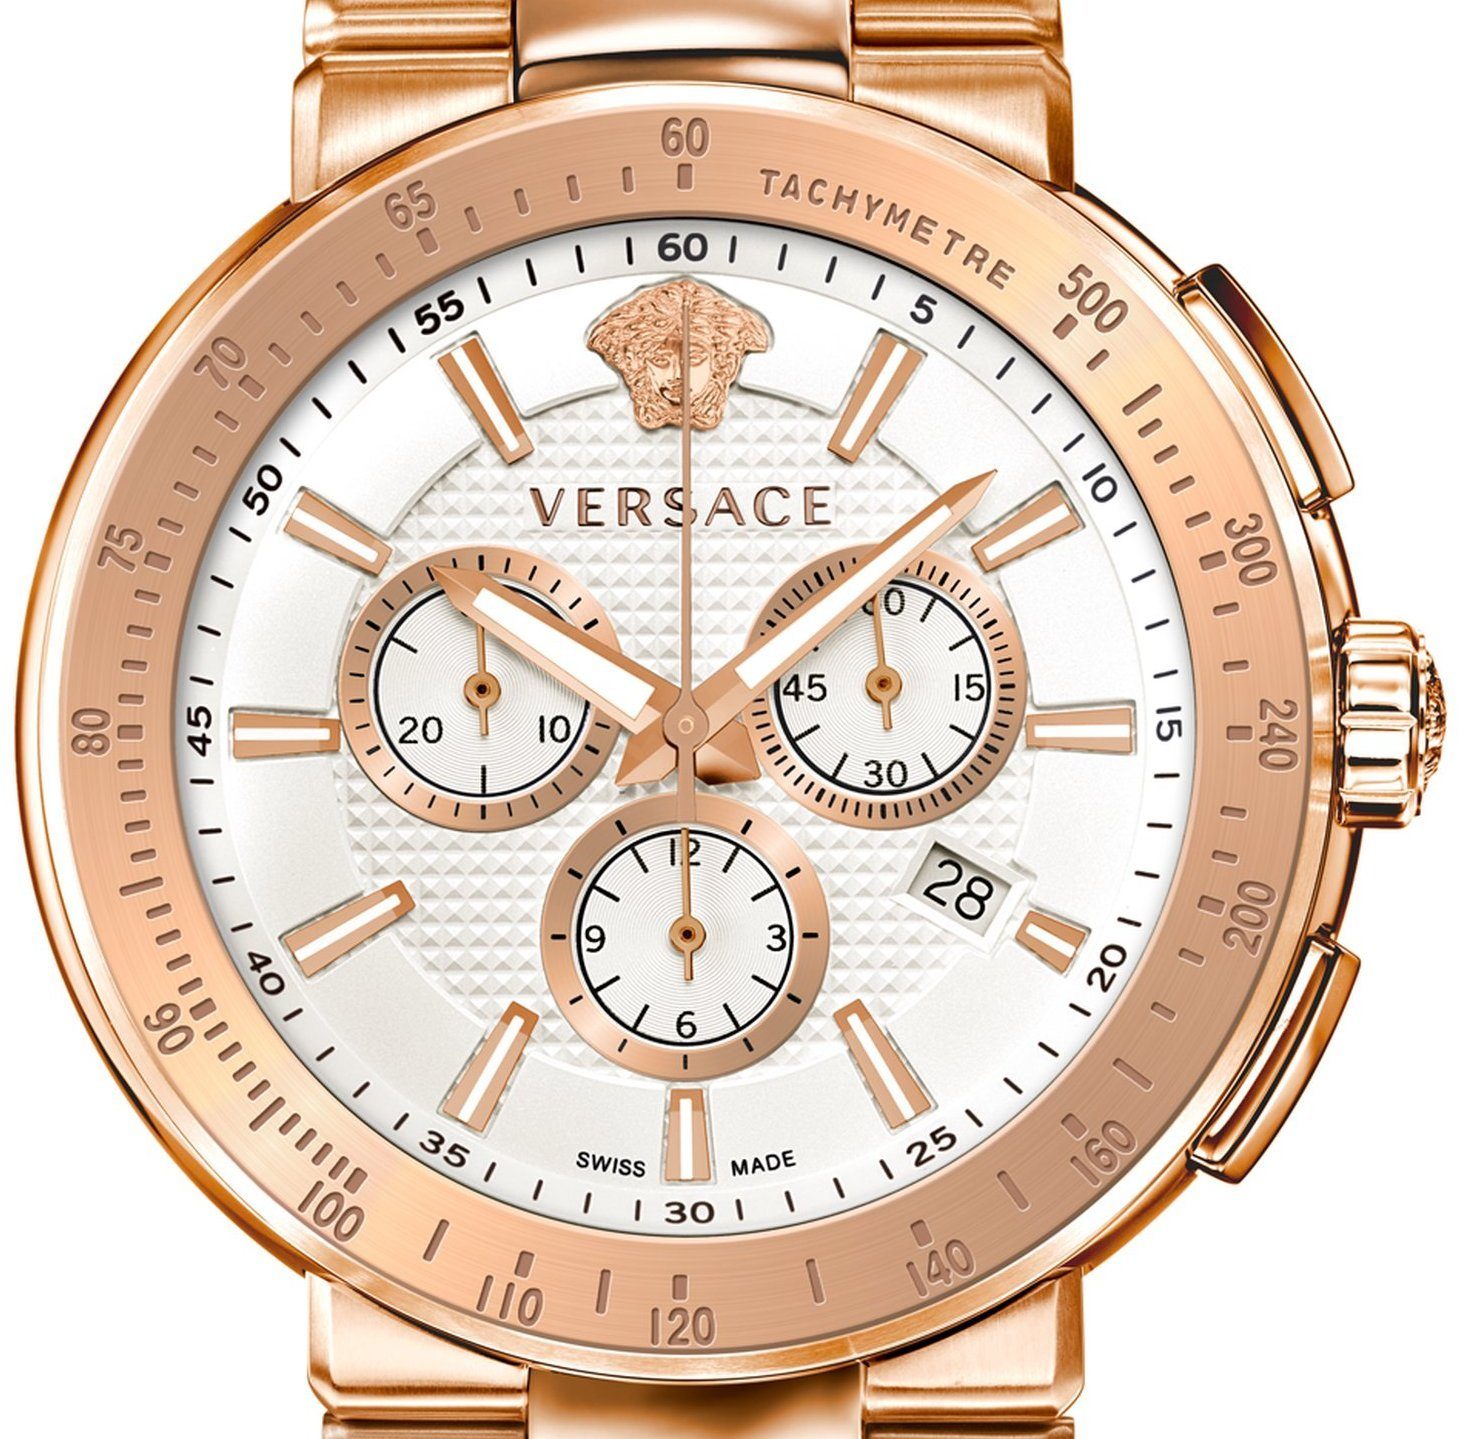 Versace Schweizer Uhr Mystique Sport